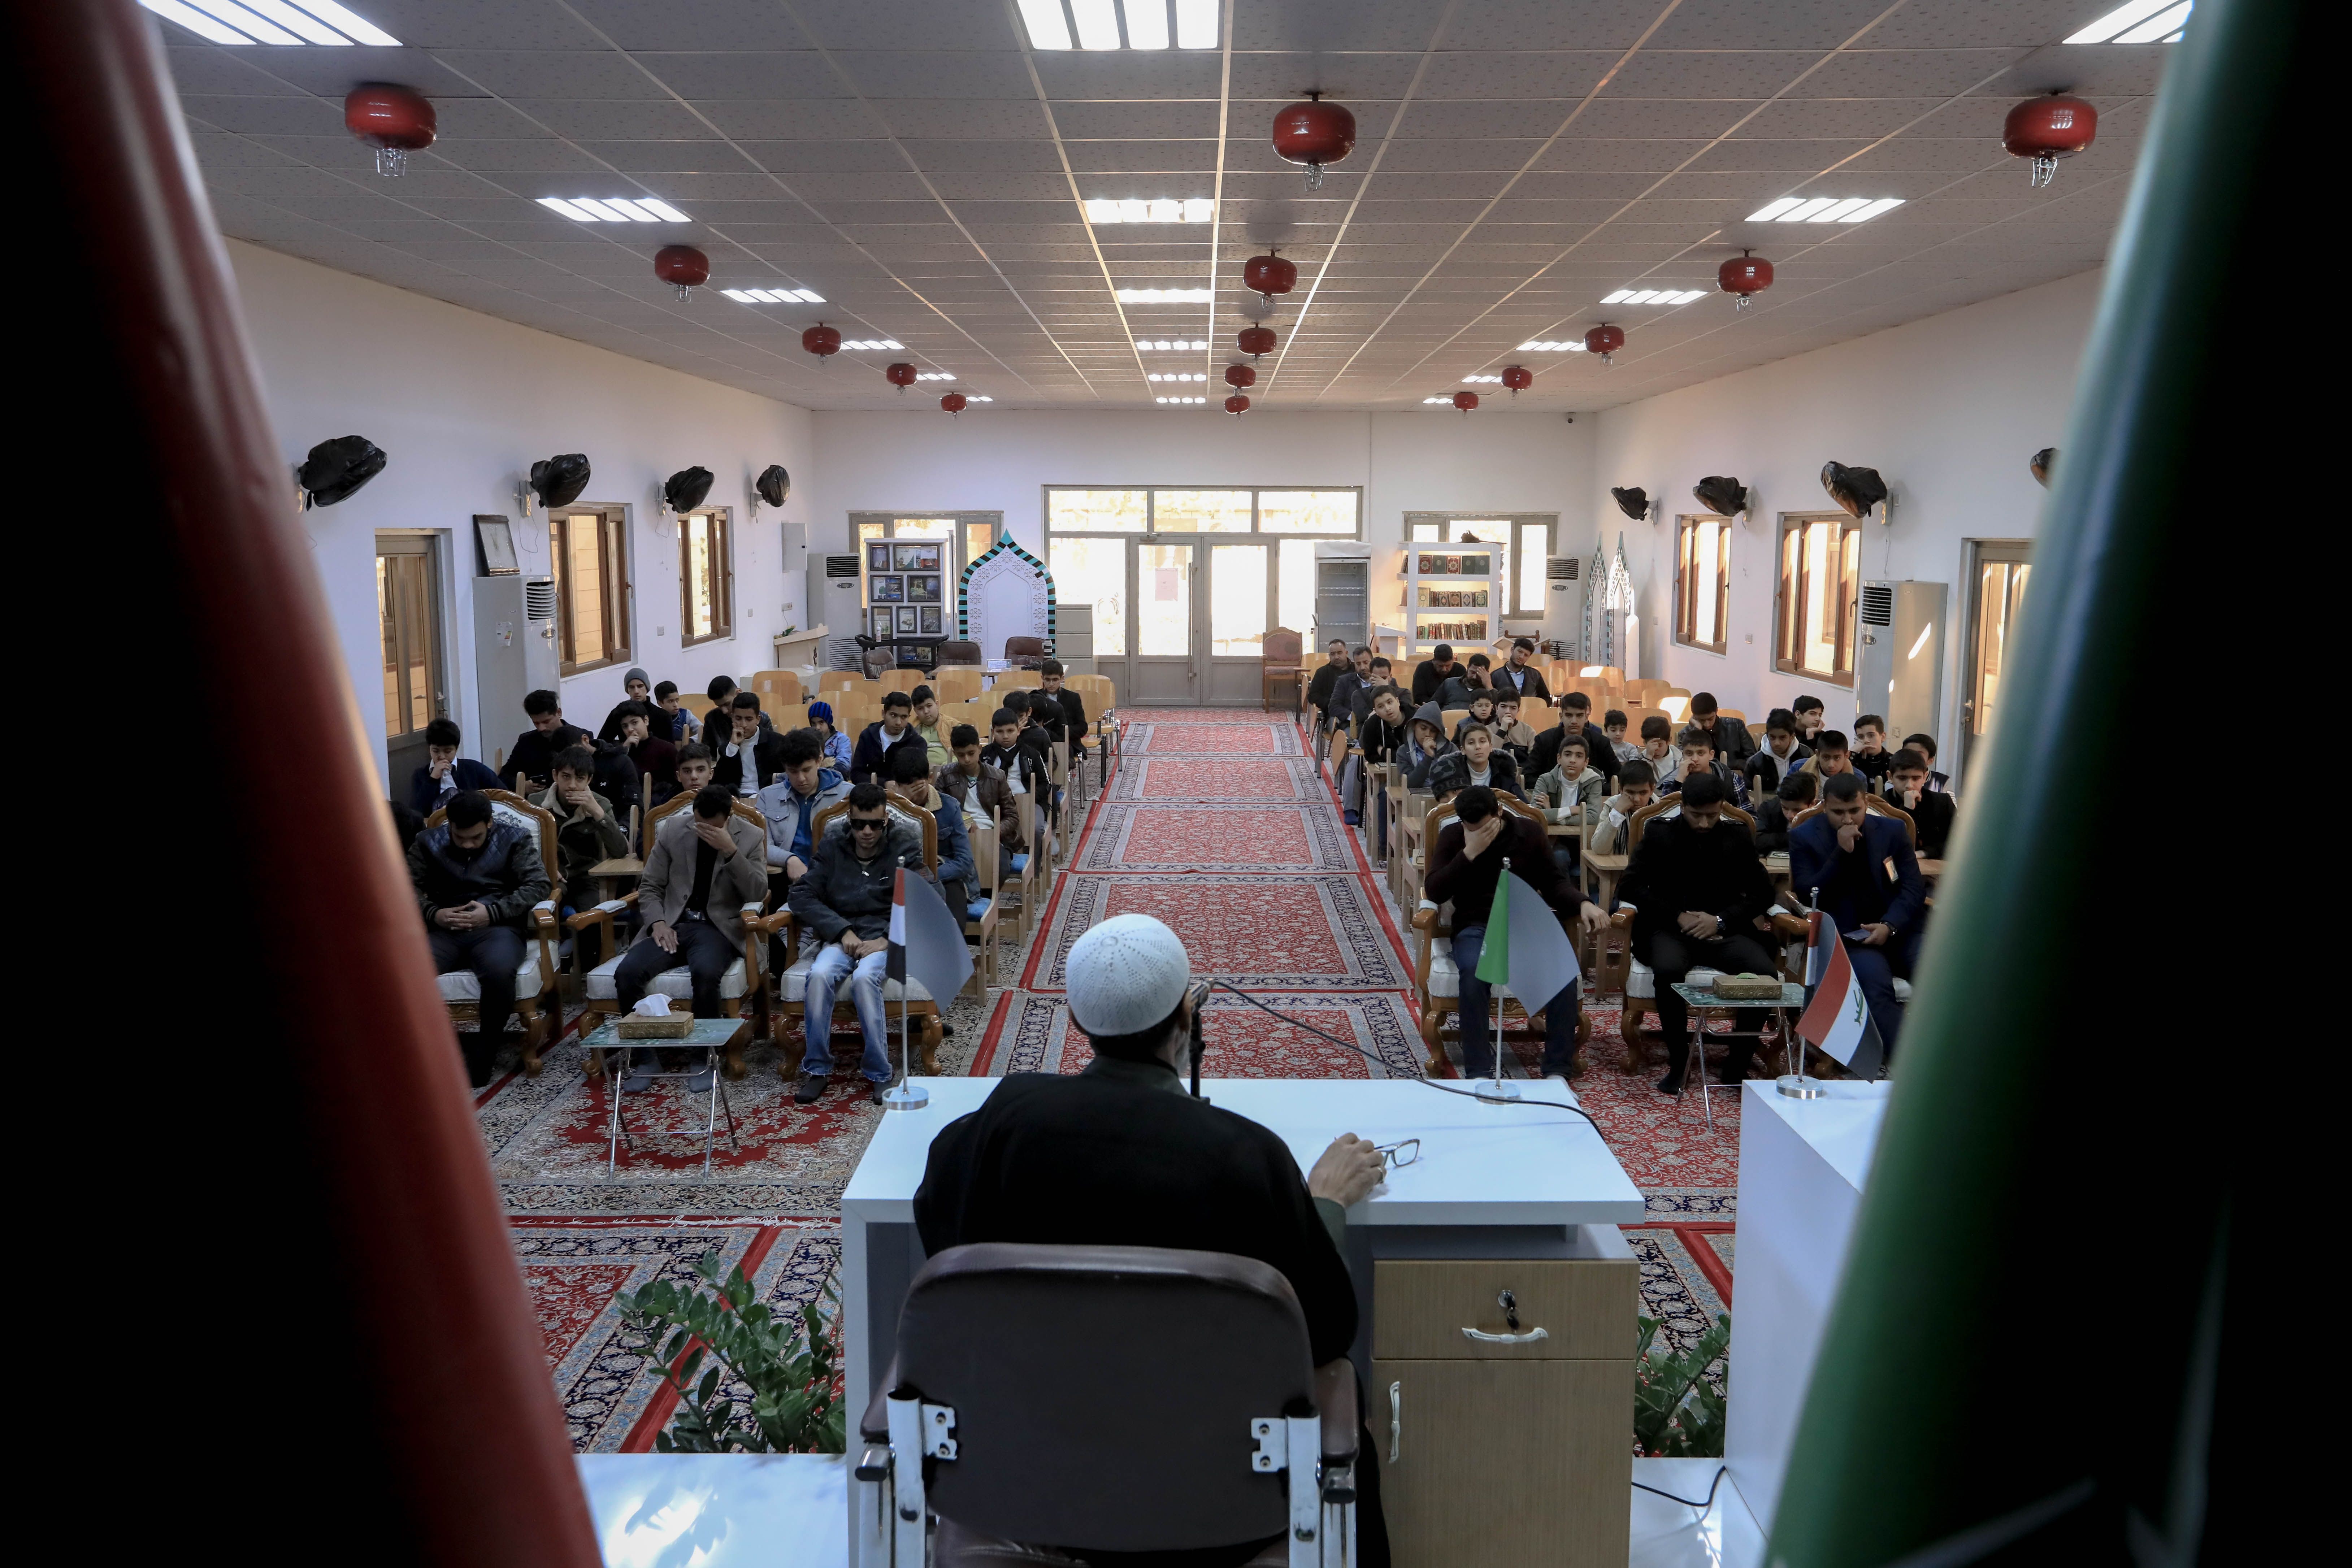 معهد القرآن الكريم يقيم مجلس عزاء في ذكرى وفاة السيدة زينب -عليها السلام-